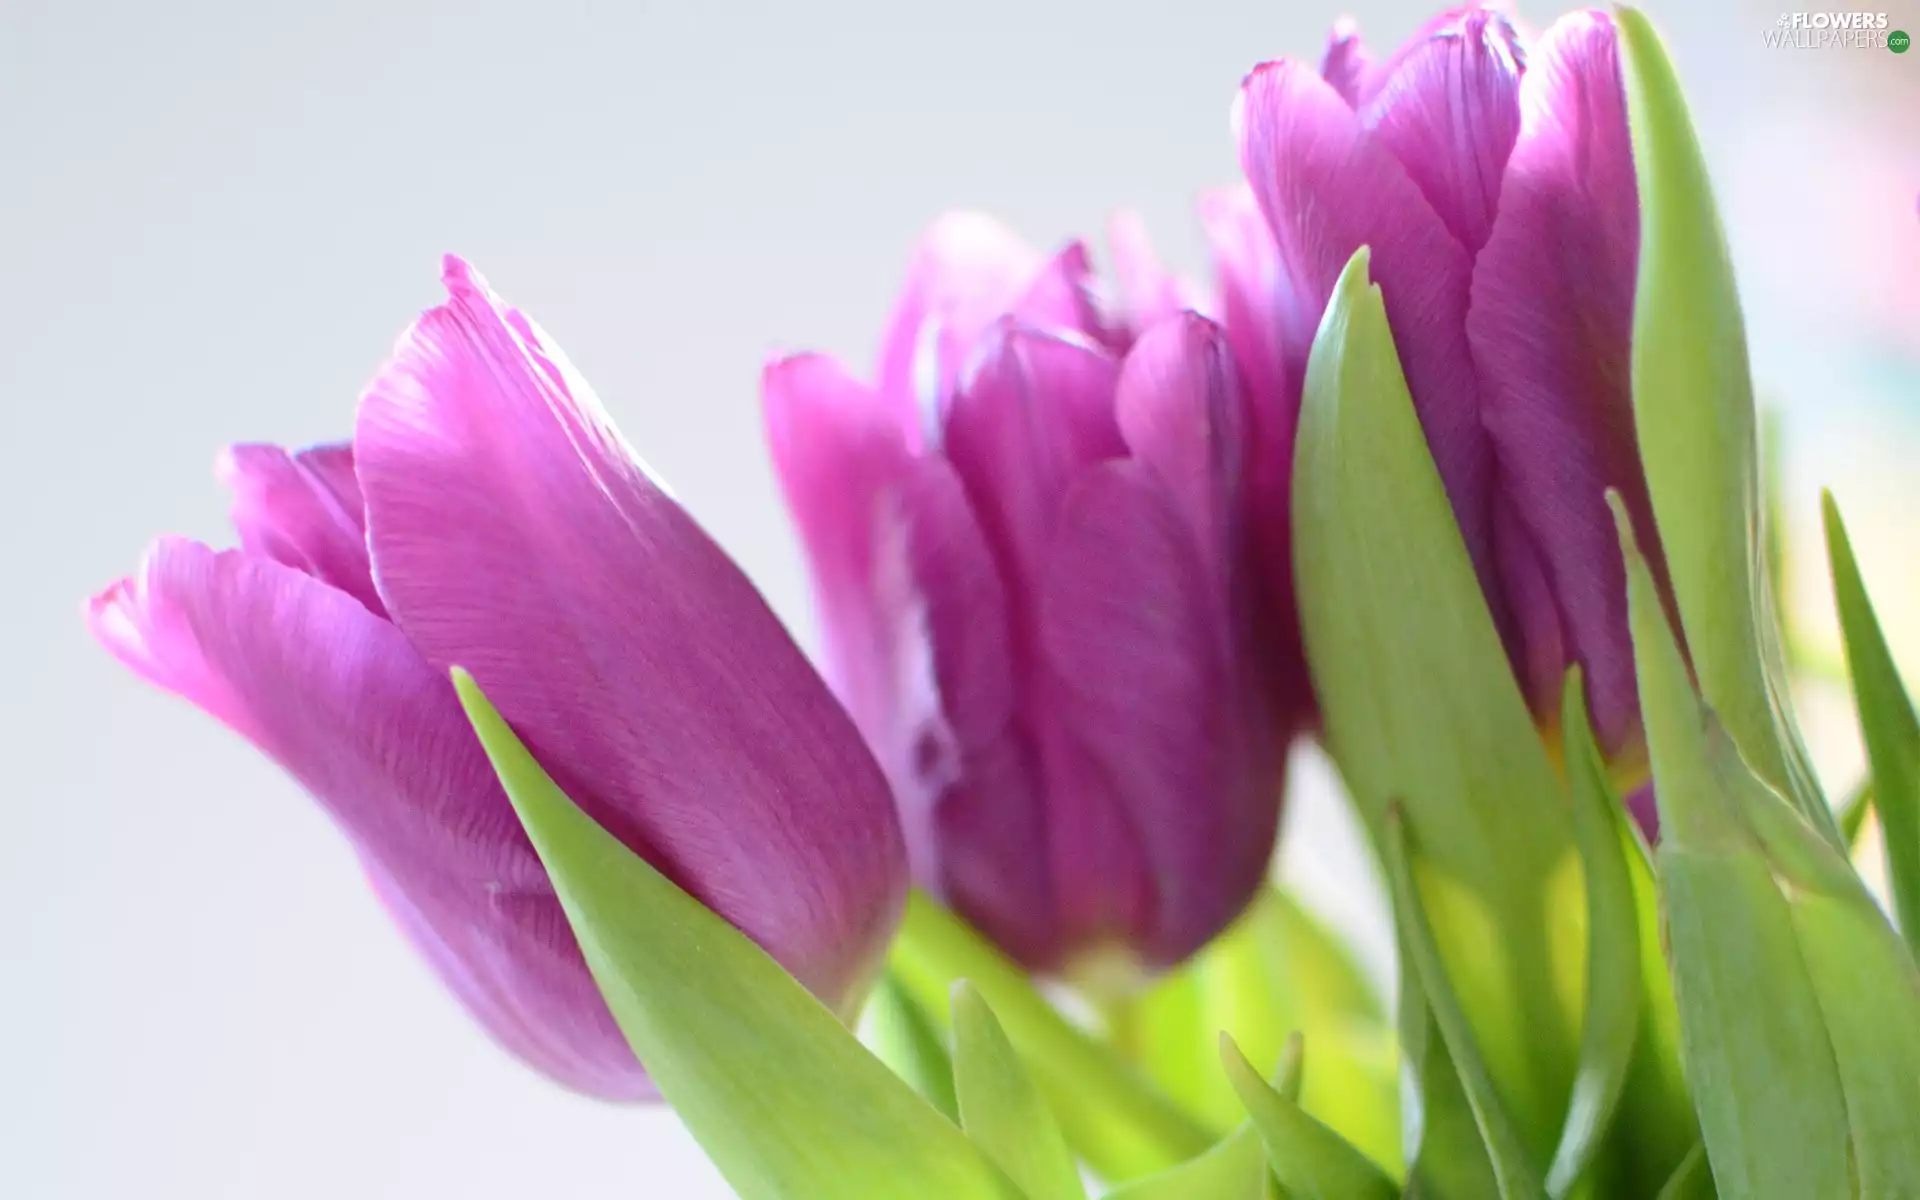 Tulips, Flowers, purple